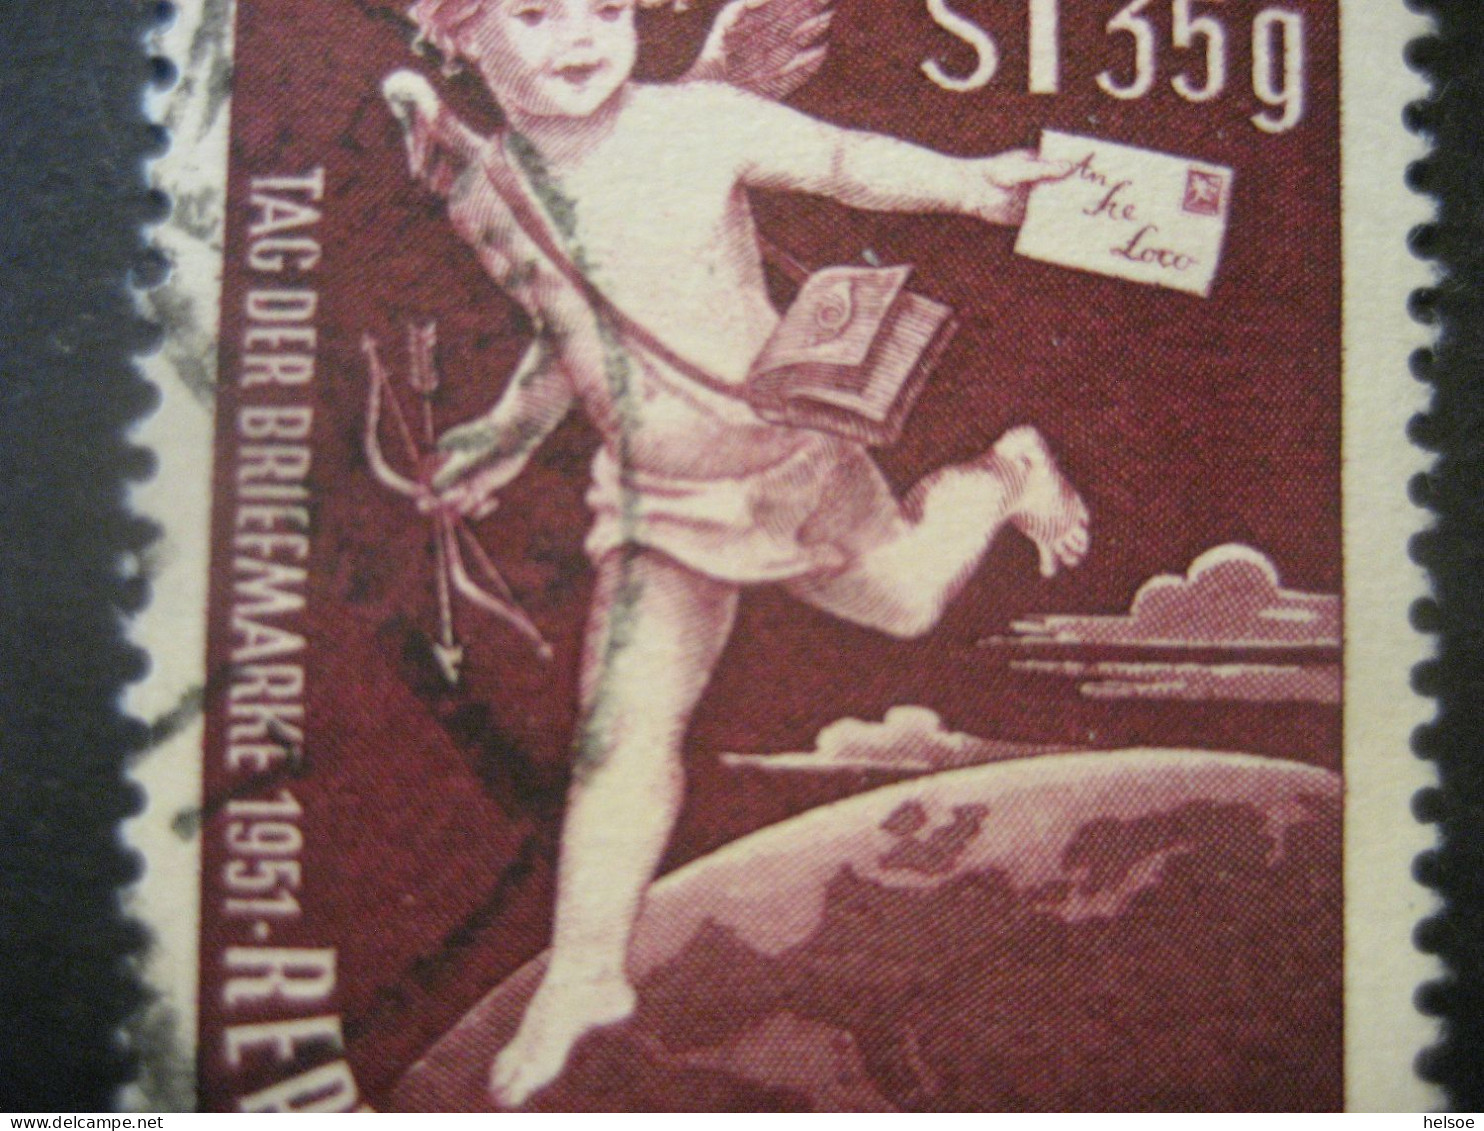 Österreich 1952- Tag Der Briefmarke Mit Plattenfehler Loch In Pfeilspitze, Mi. 972 II Gebraucht - Errors & Oddities